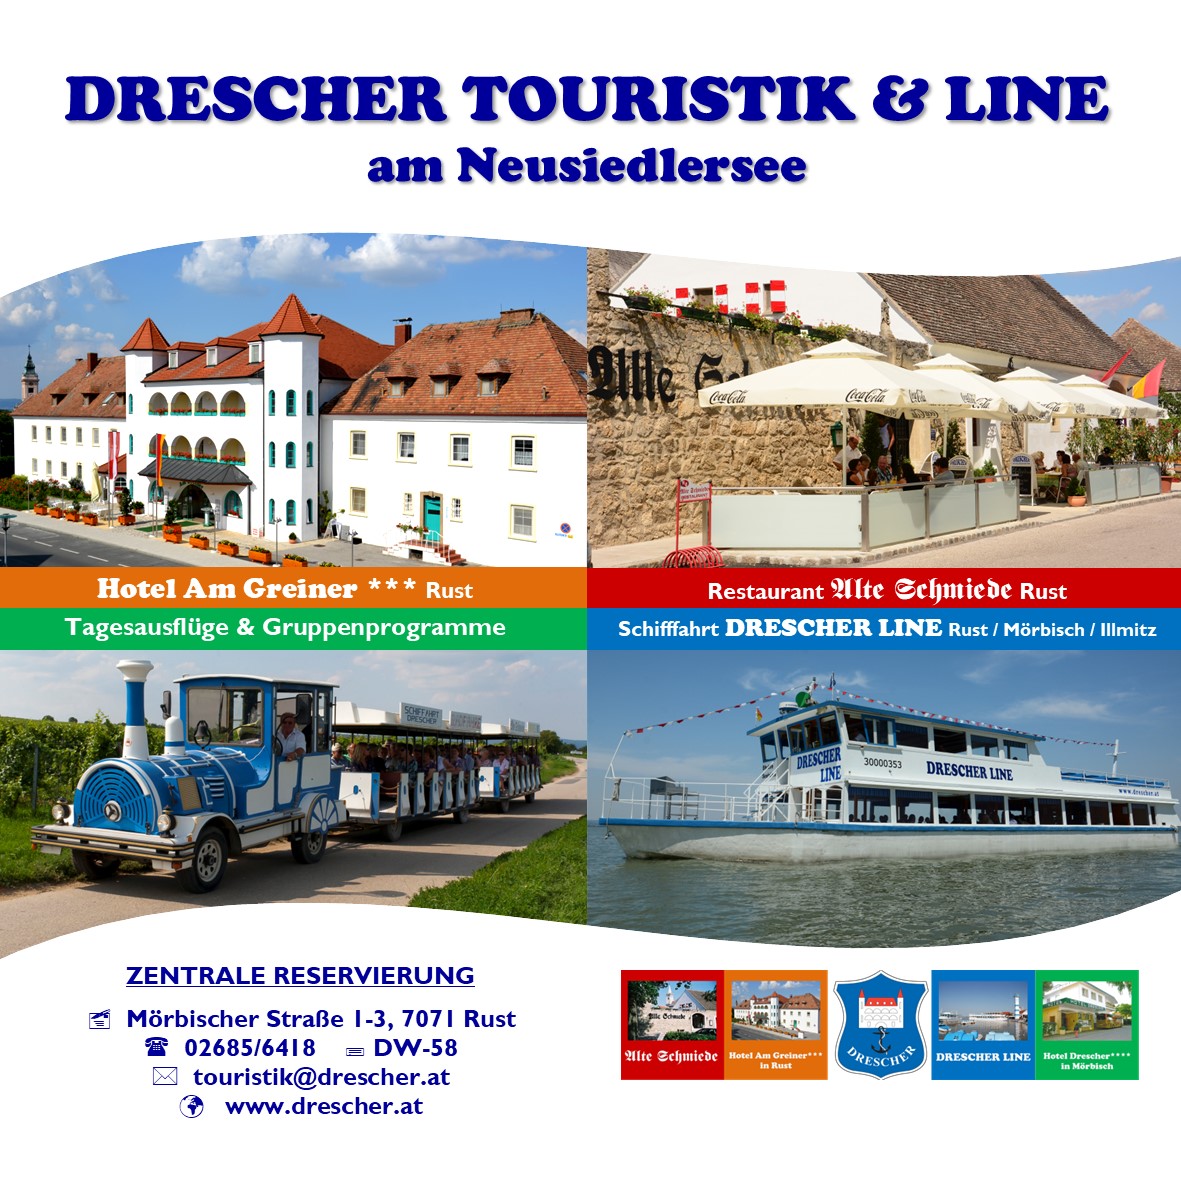 Drescher Touristik